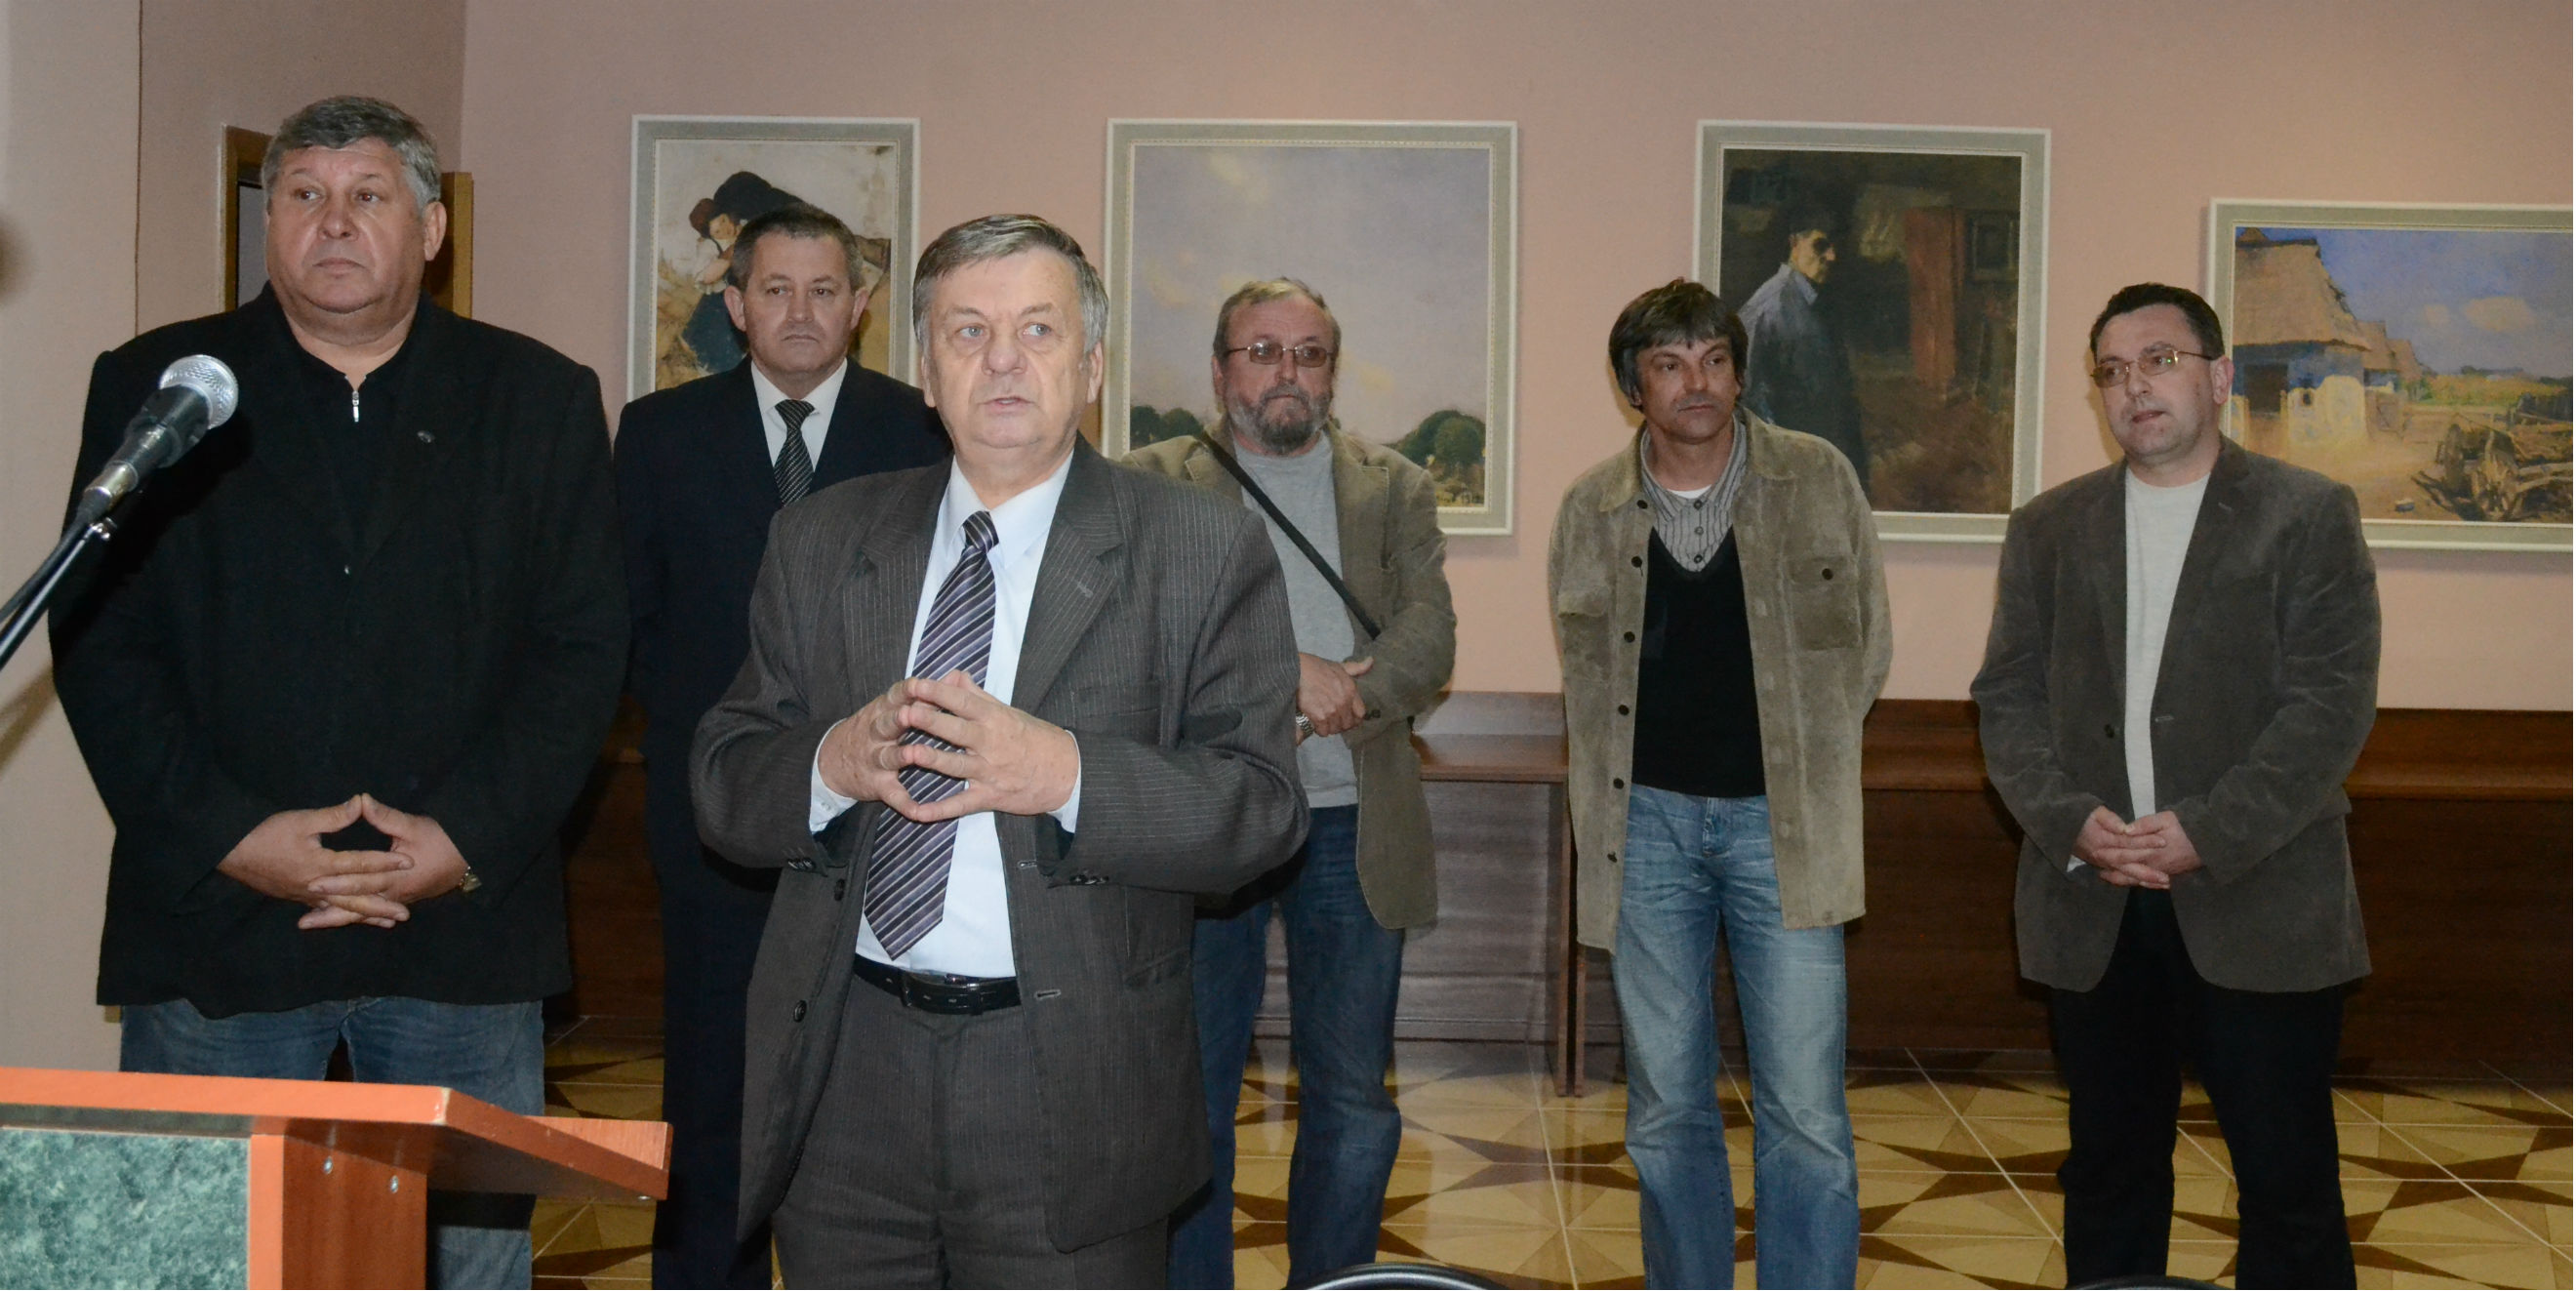 На Тячівщині відбулося відкриття виставки картин іменитих закарпатських та українських майстрів образотворчого мистецтва